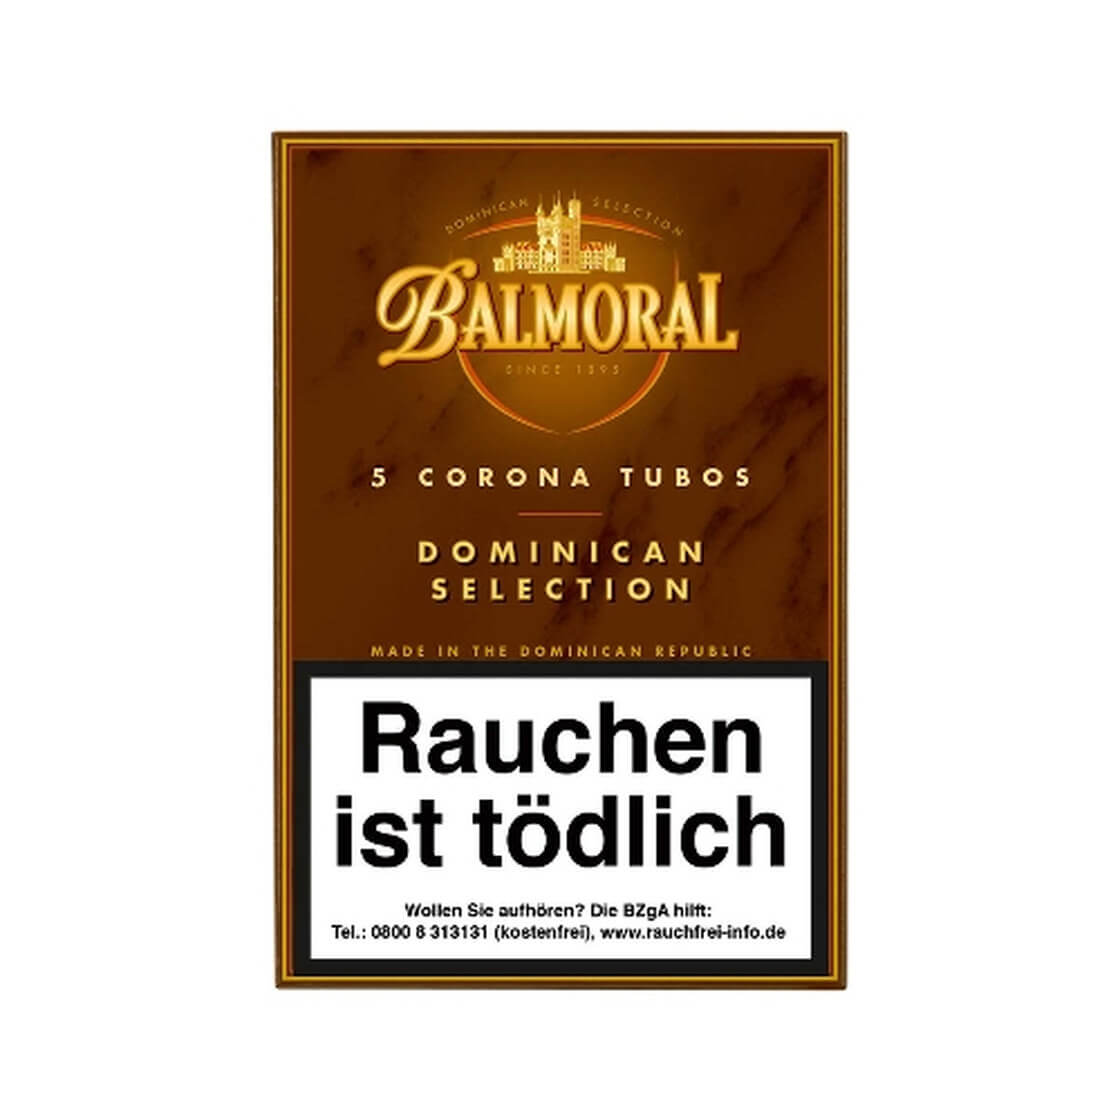 Balmoral Corona Tubos – Hộp 5 điếu xì gà truyền thống giá 450.000vnđ